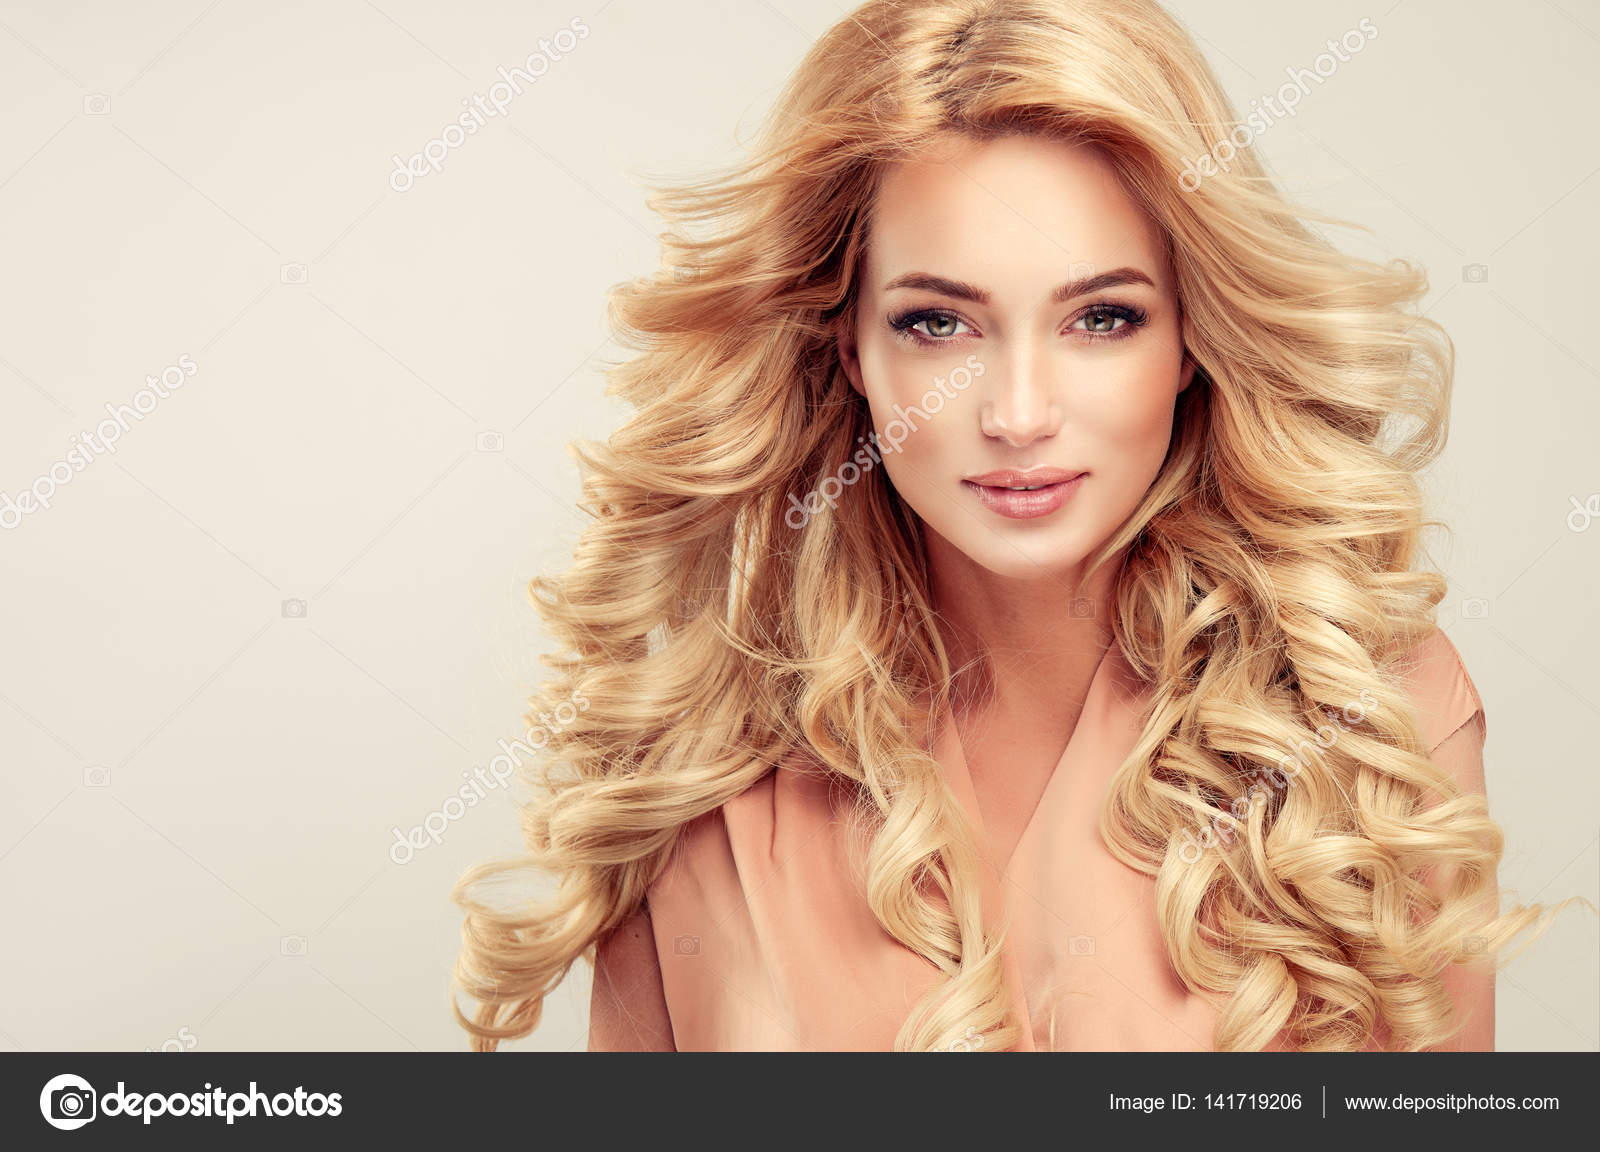 Blonde Hair Girl Selfie - wide 5